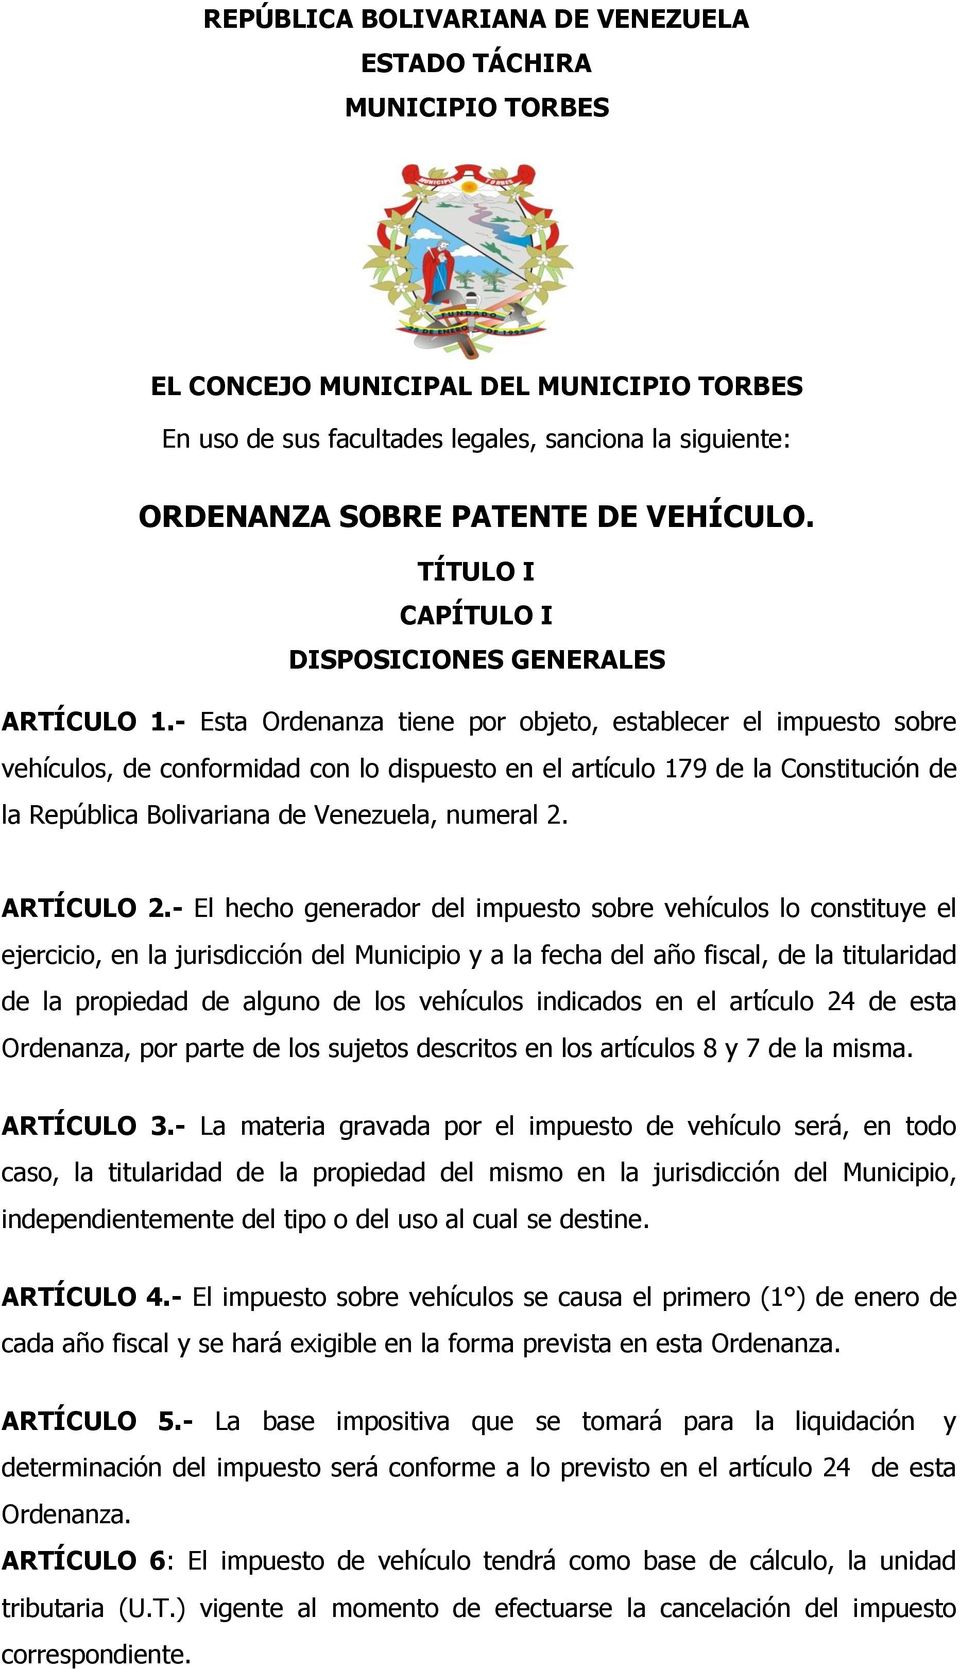 - Esta Ordenanza tiene por objeto, establecer el impuesto sobre vehículos, de conformidad con lo dispuesto en el artículo 179 de la Constitución de la República Bolivariana de Venezuela, numeral 2.